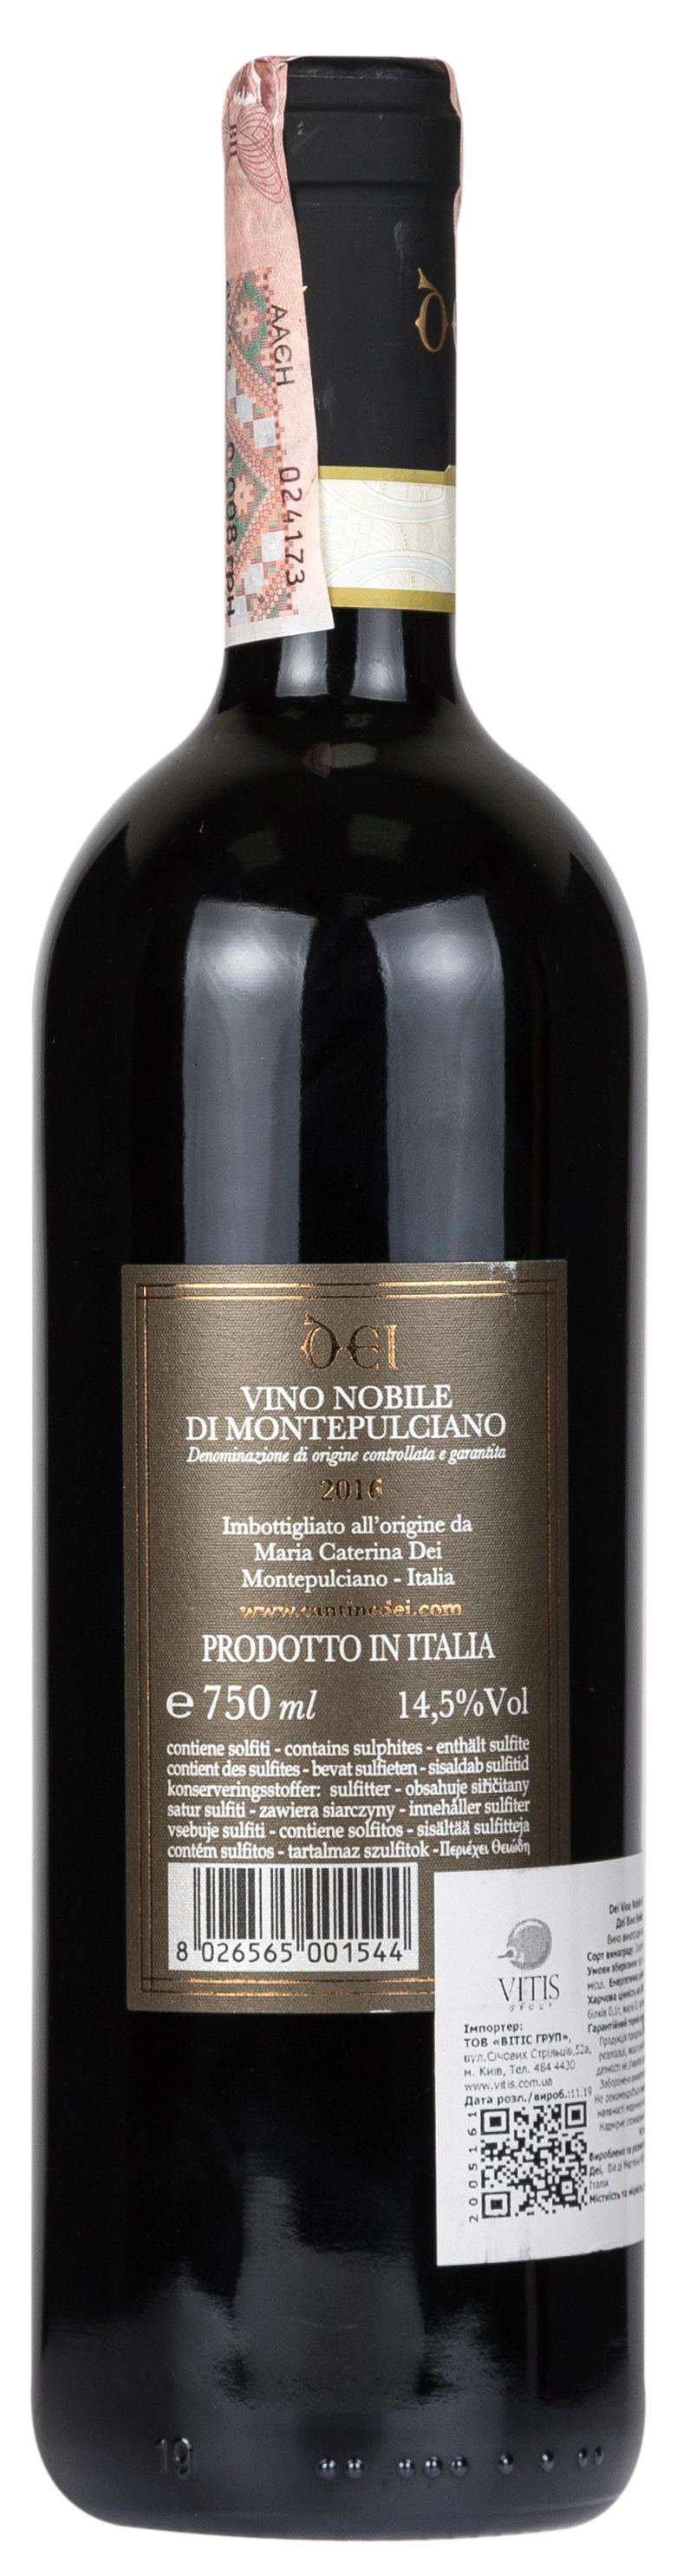 Dei Vino Nobile di Montepulciano 2016 - 2